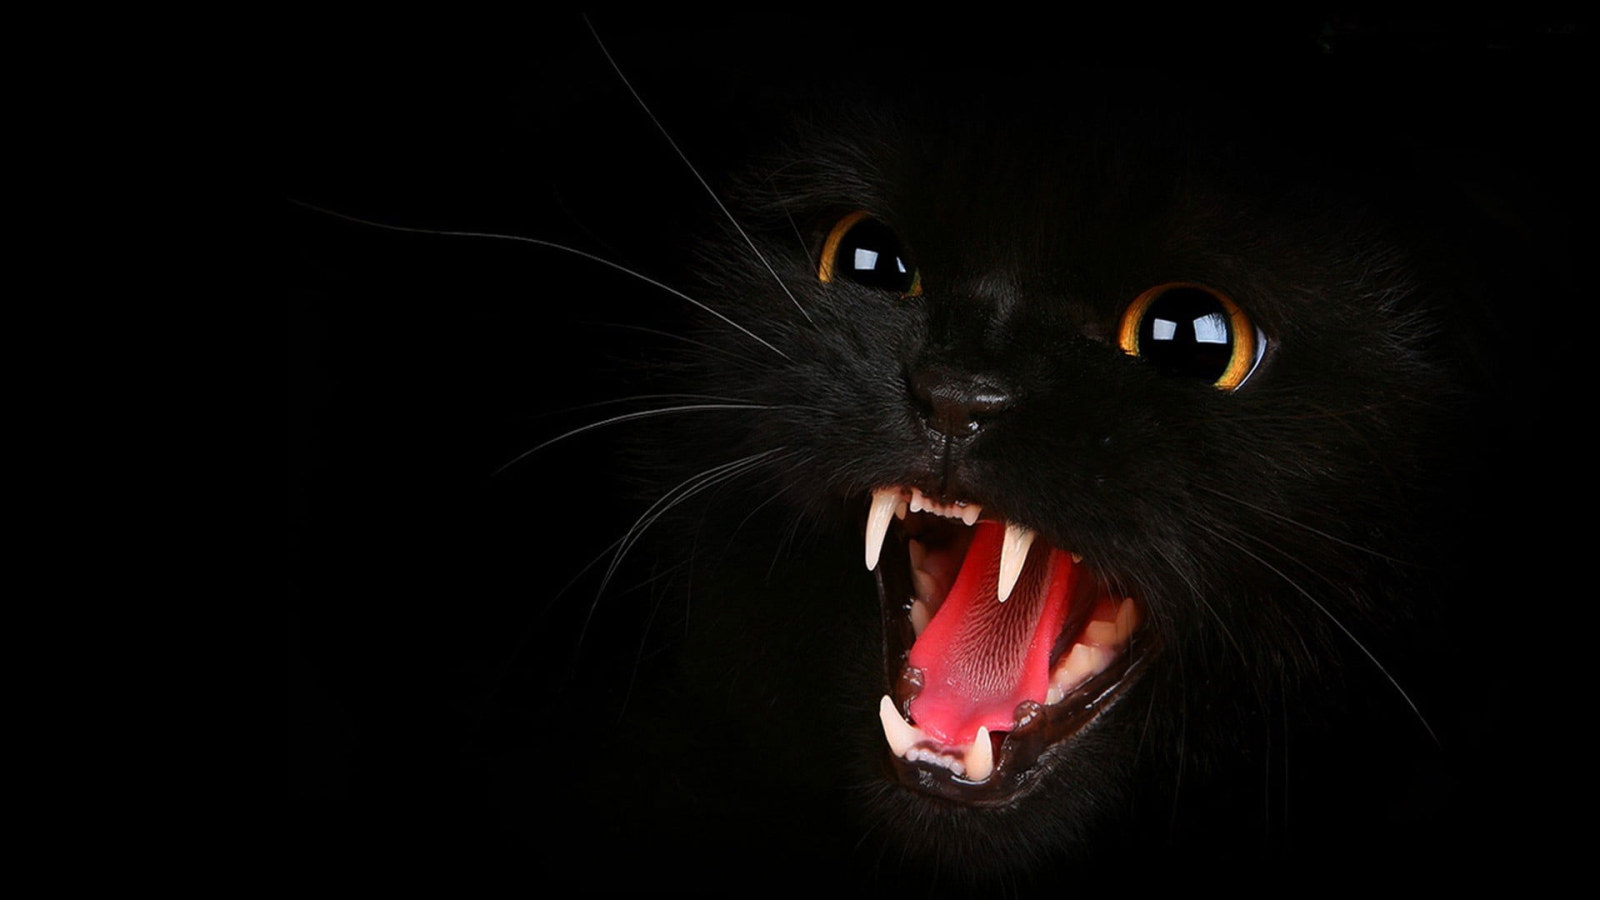 Wallpaper Black Cat, Black Cats, Animals, Open Mouth • Wallpaper For You HD Wallpaper For Desktop & Mobile